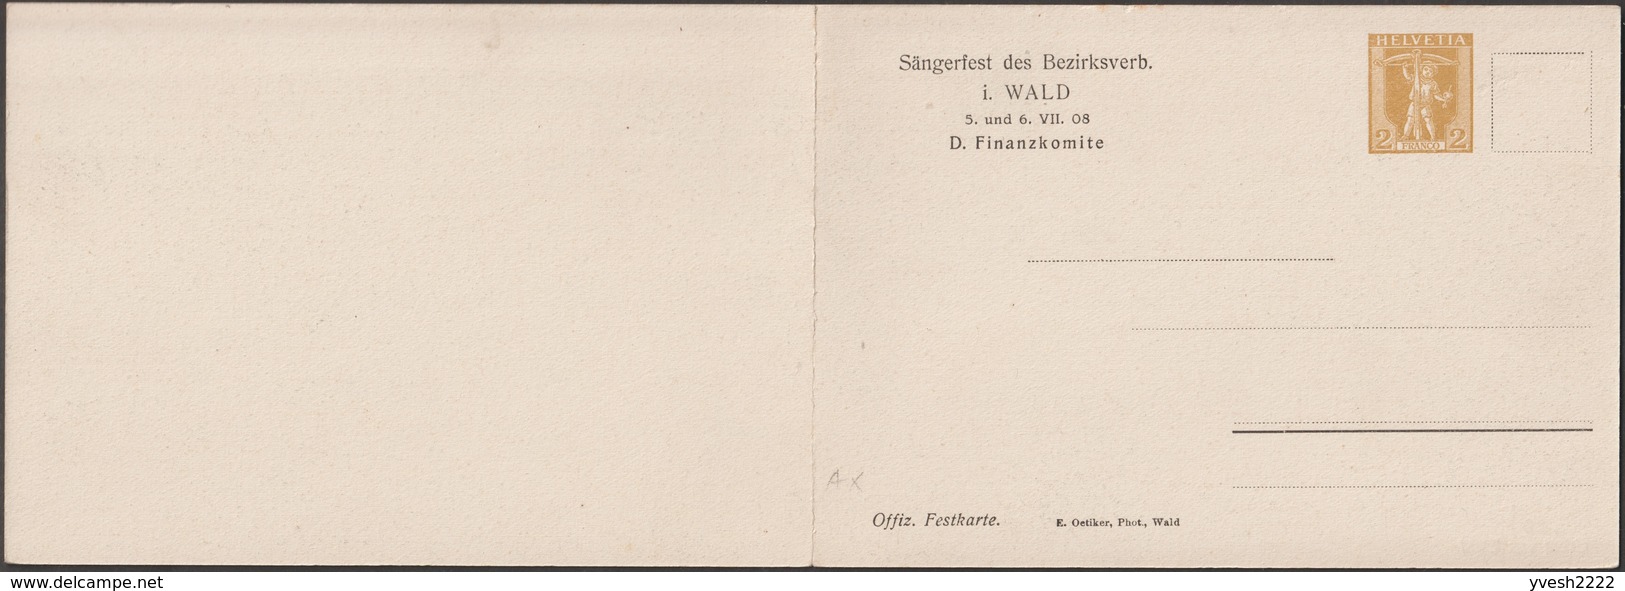 Suisse 1908. Carte Postale, Entier Postal Double. Wald, Zurich. Vue Panoramique De La Commune Et Des Alpes. Musique - Berge